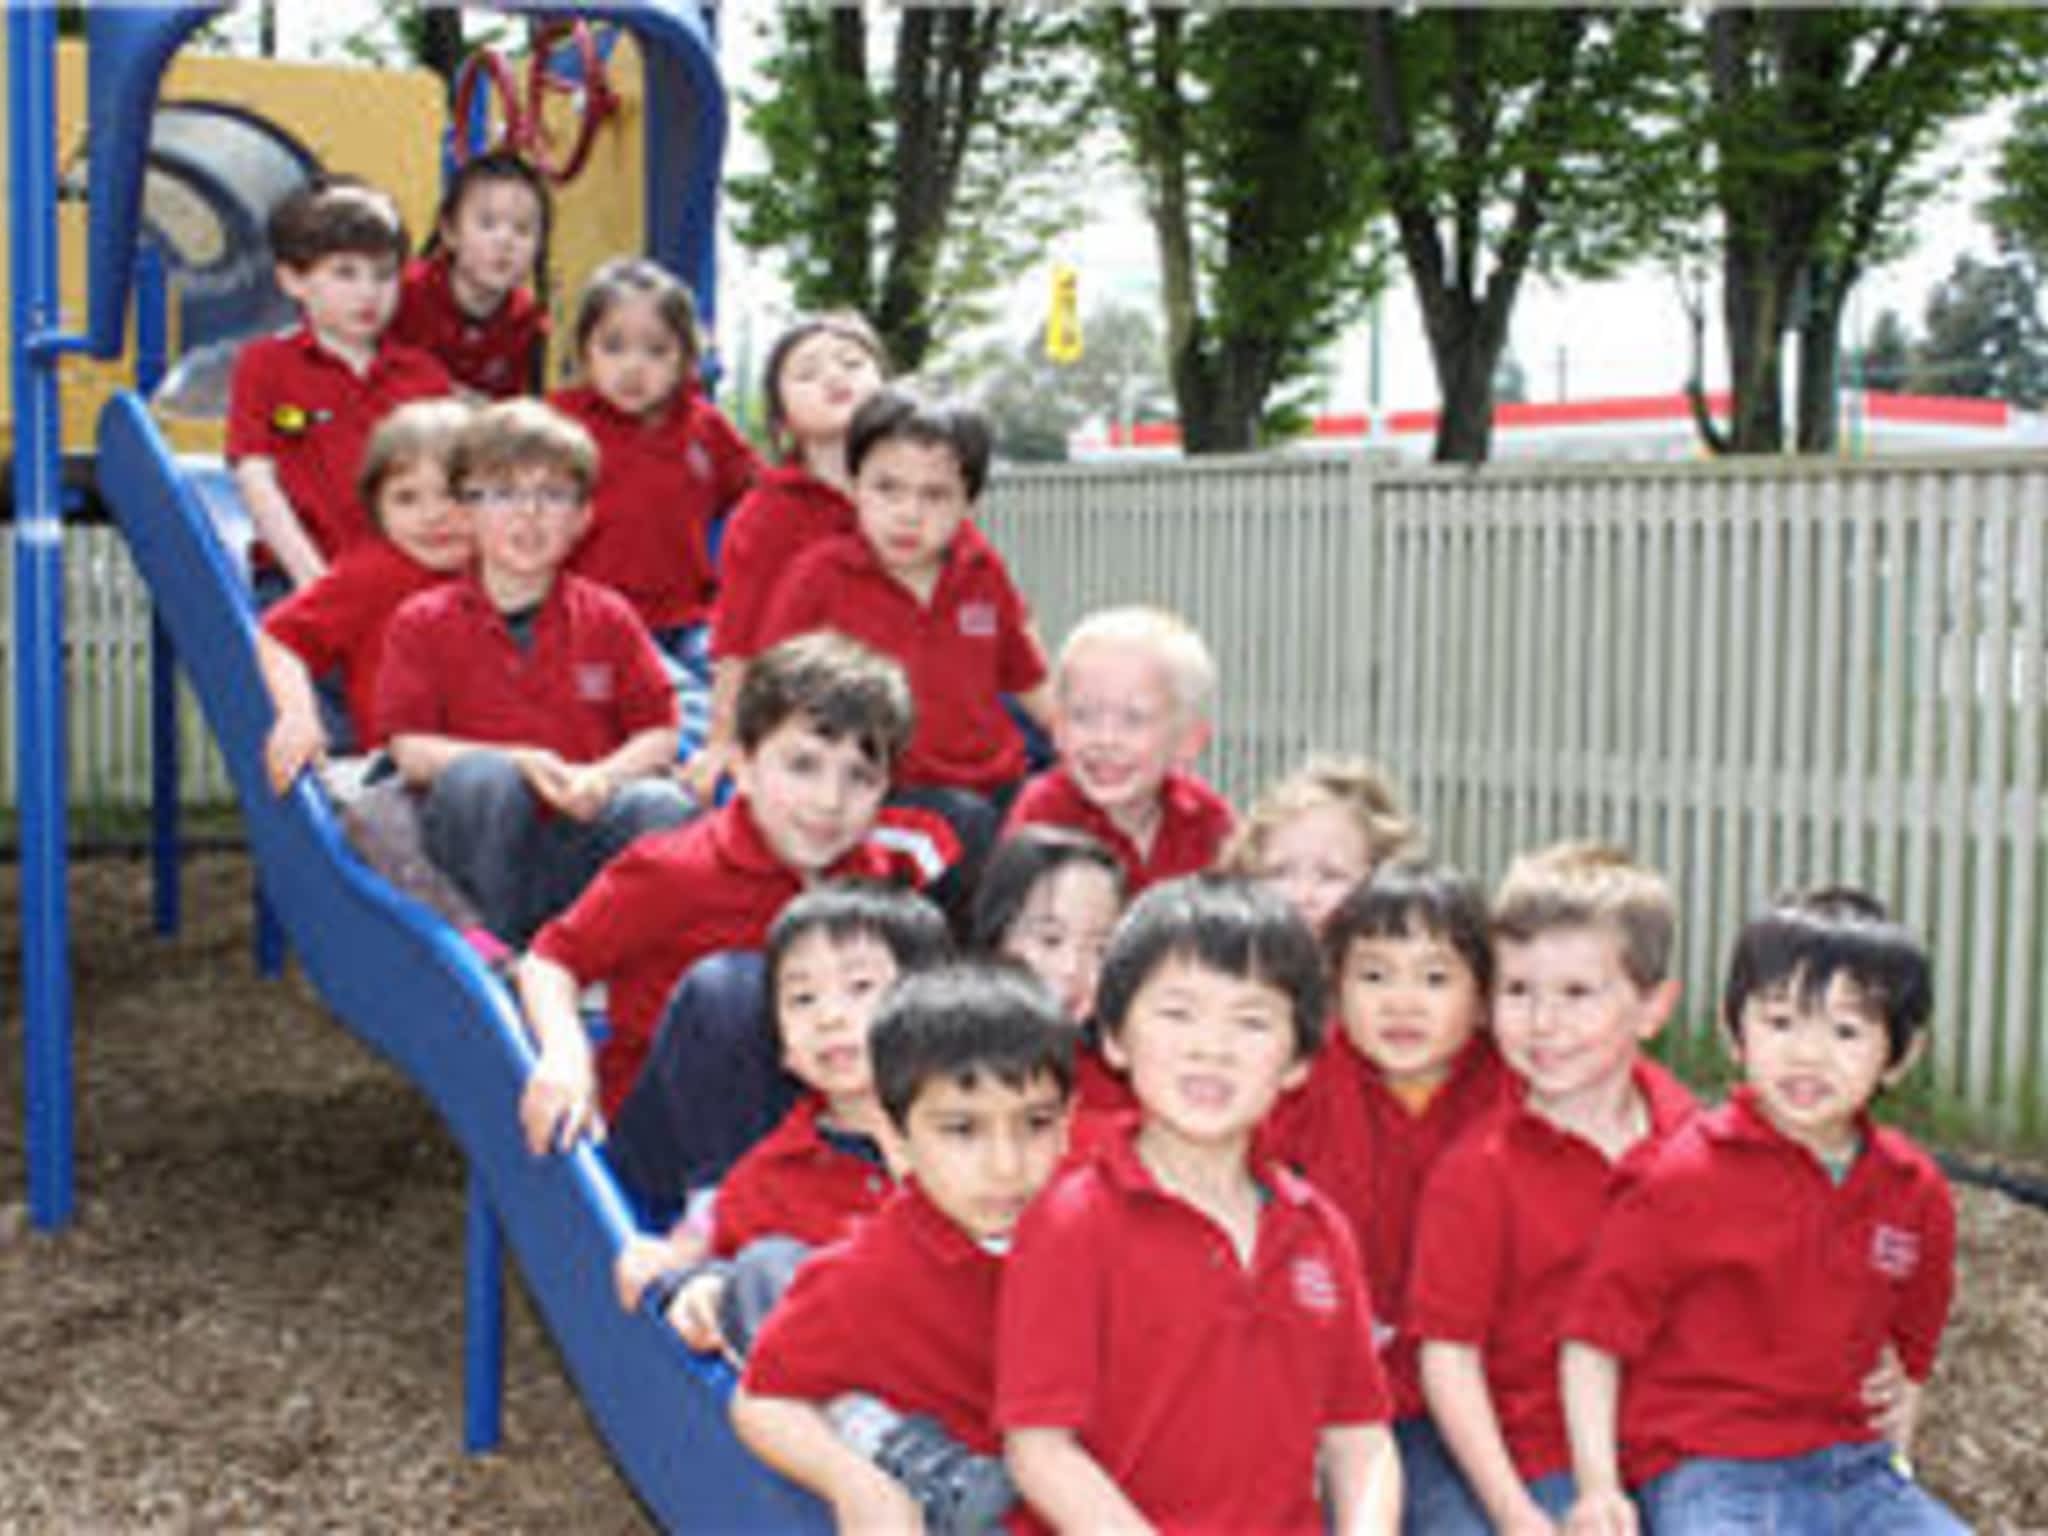 photo Vancouver Bilingual Preschool Society